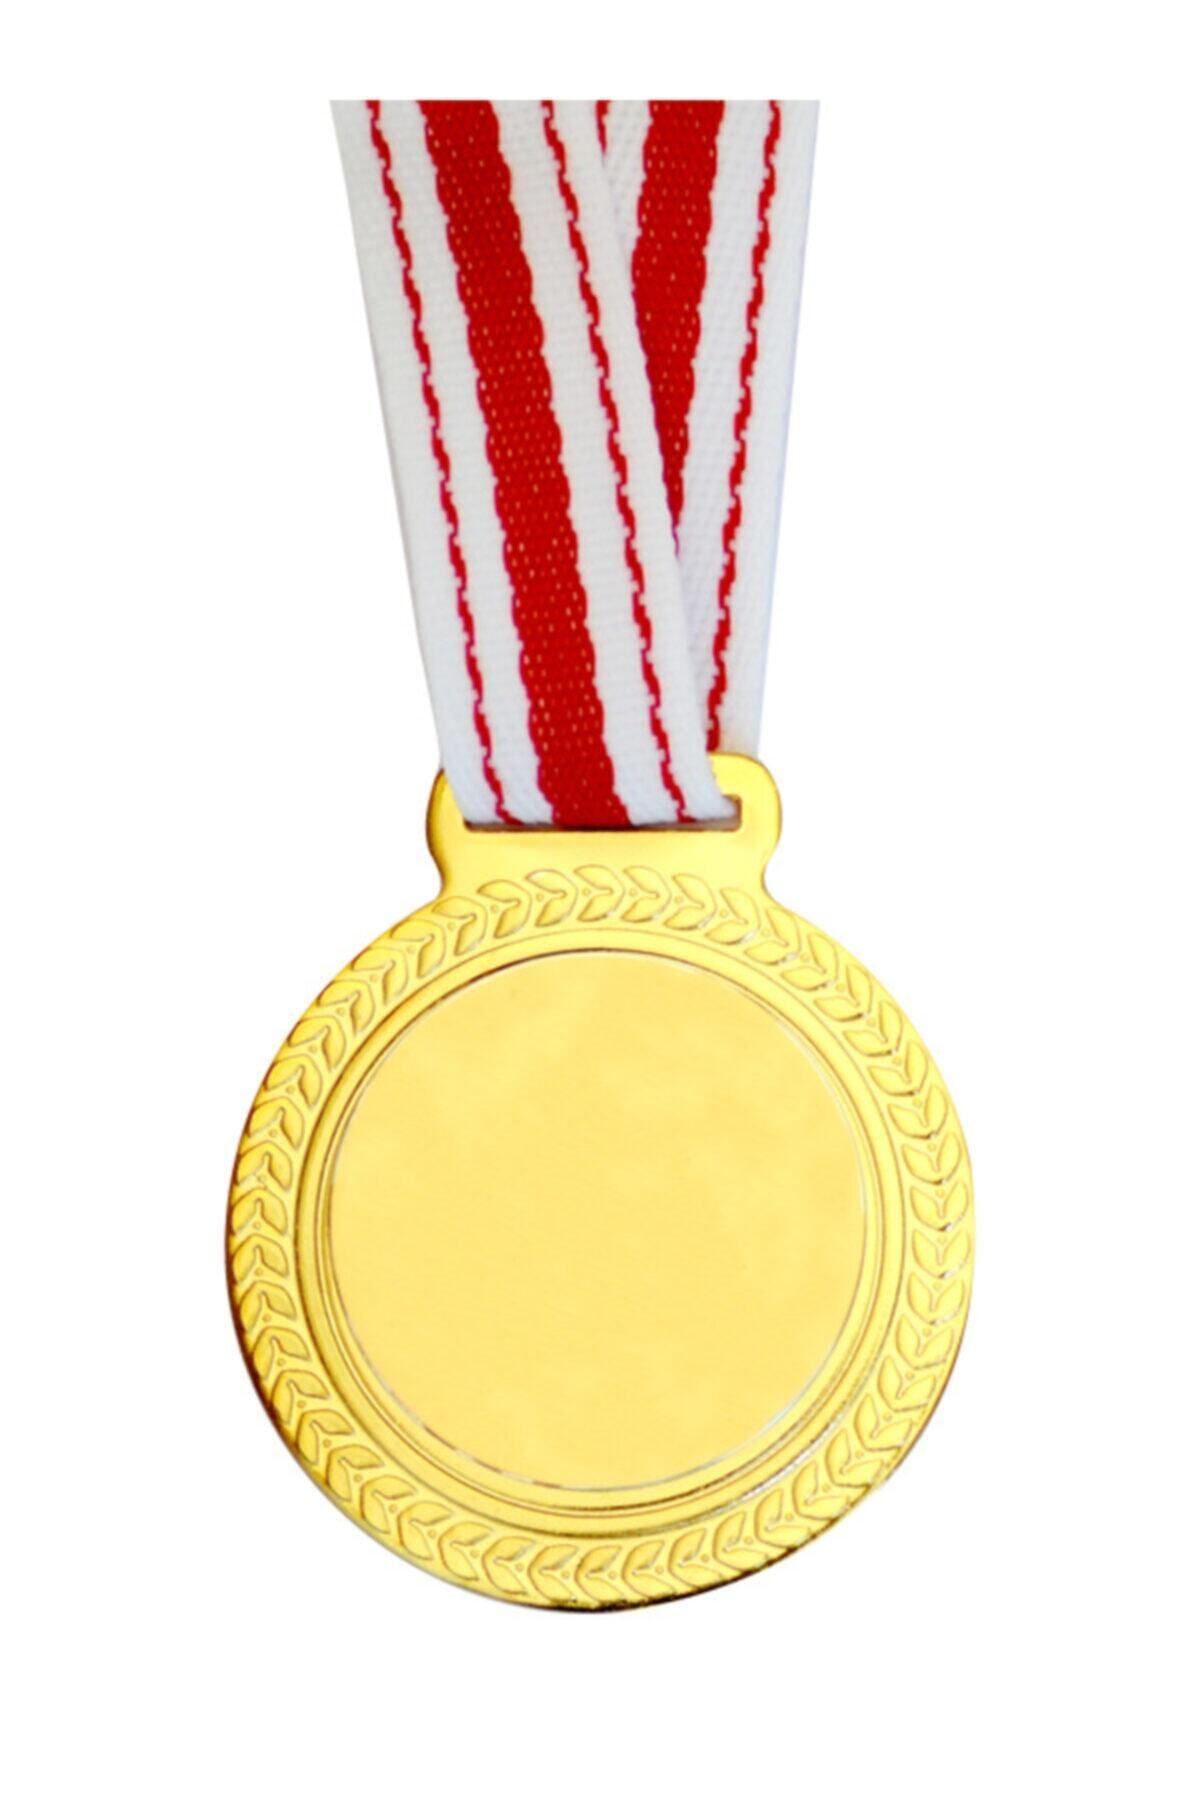 Lider Baskı Altın Boş - Baskısız 1. Kalite Madalya